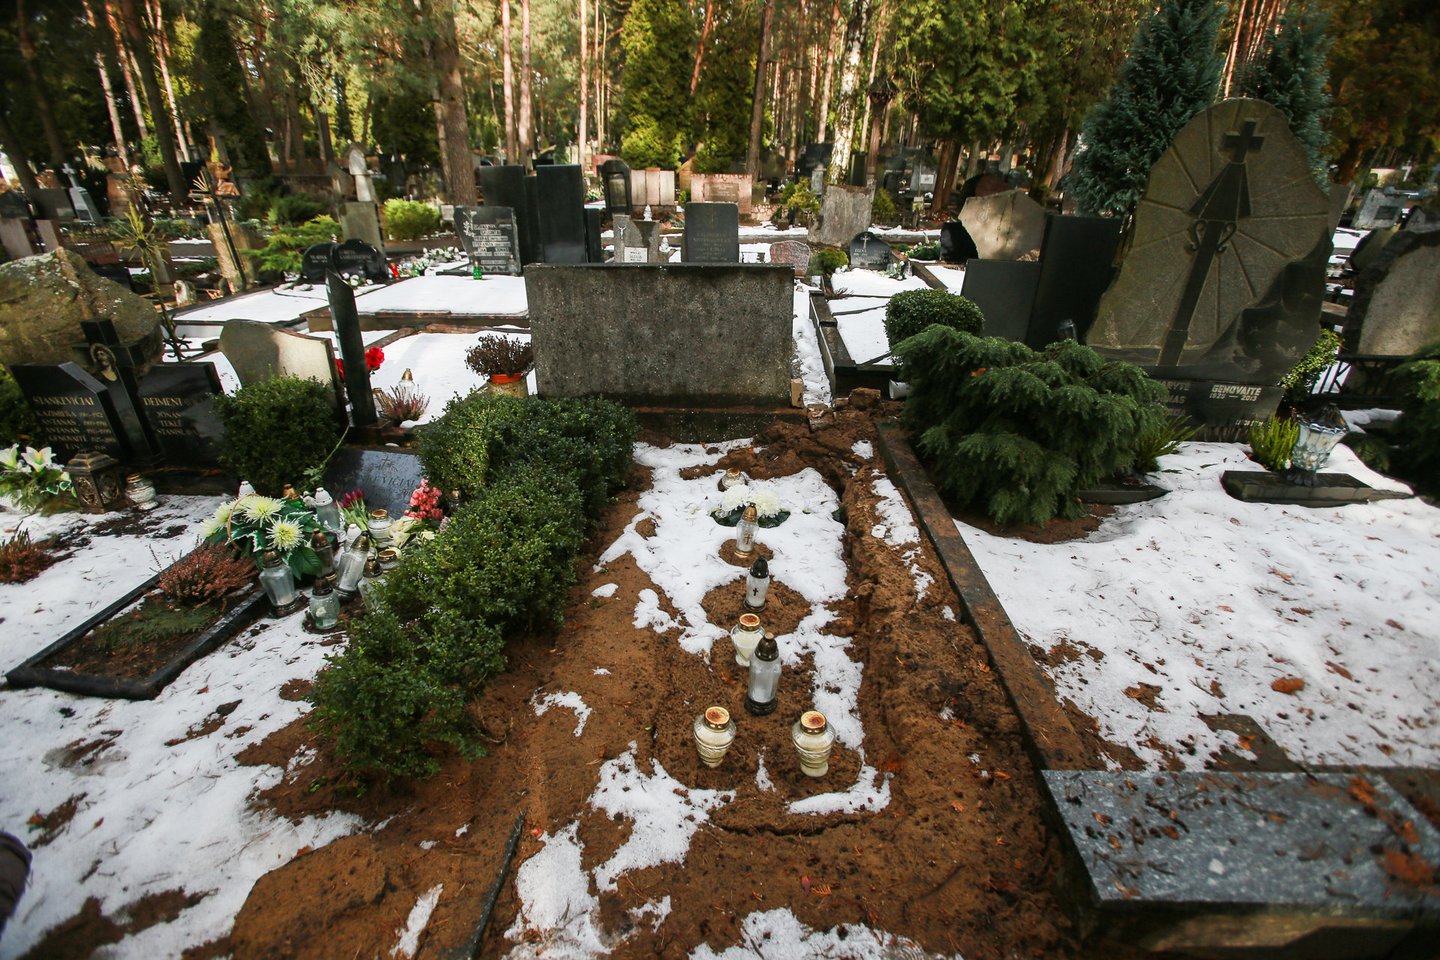  Istorija dėl kauniečio V.Ramašausko kapo įteisinimo persikėlė į teismą. Taip kapavietė atrodė praėjusią žiemą, kai po svetimo žmogaus palaidojimo.<br> G.Bitvinsko nuotr.